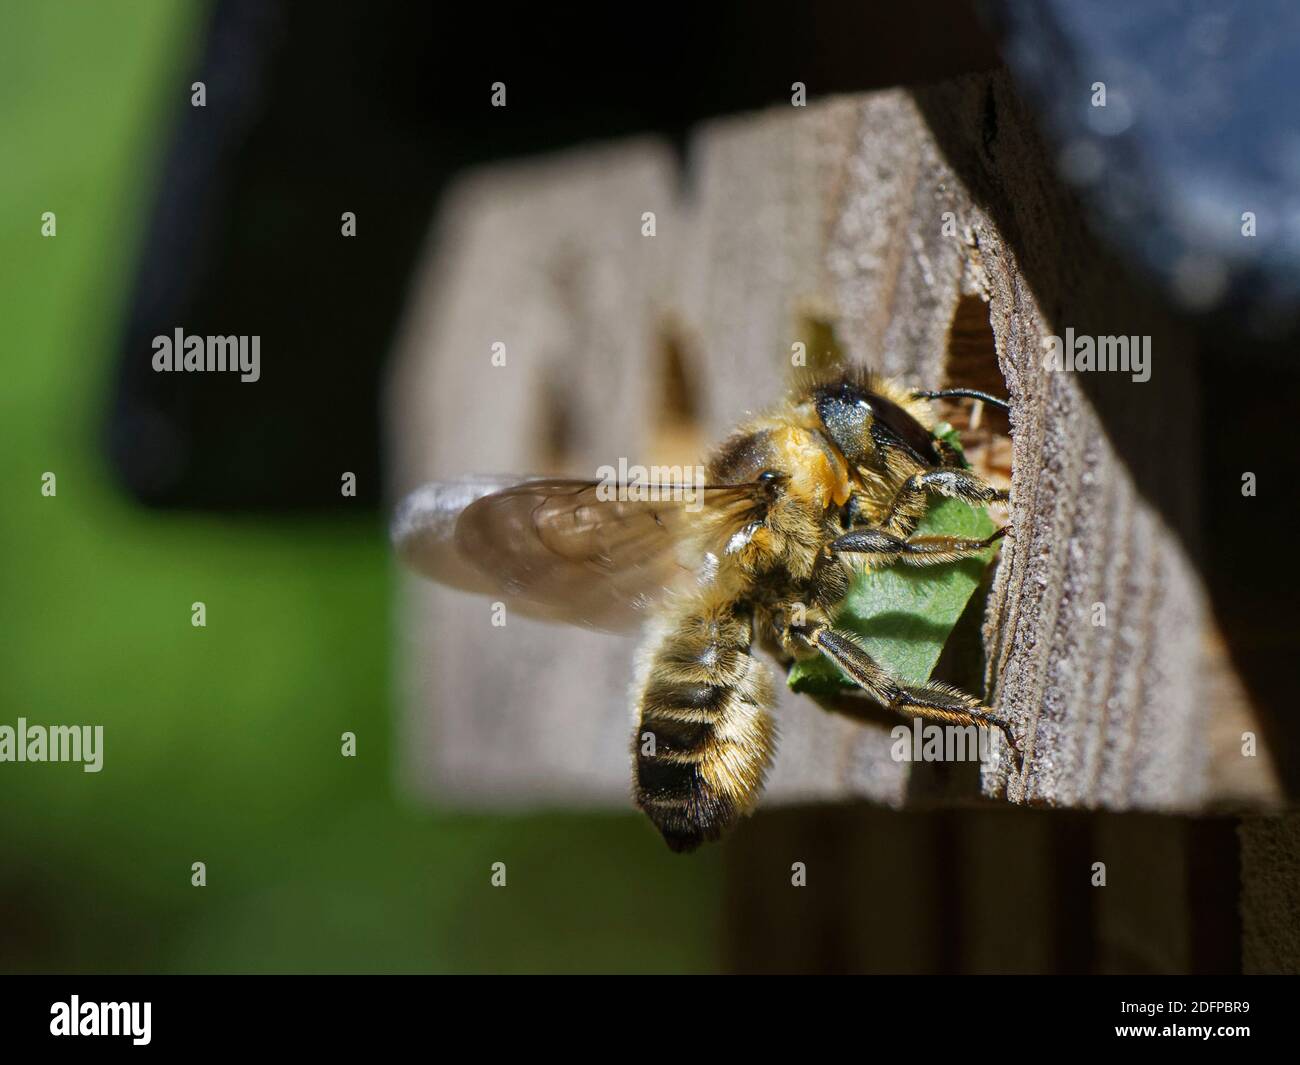 Holzschnitzerei-Biene (Megachile ligniseca), die in einem Insektenhotel in ihr Nestloch eindringt und ein geschnittenes Sycamore-Blatt trägt, um eine Brutzelle zu säumen, W Stockfoto